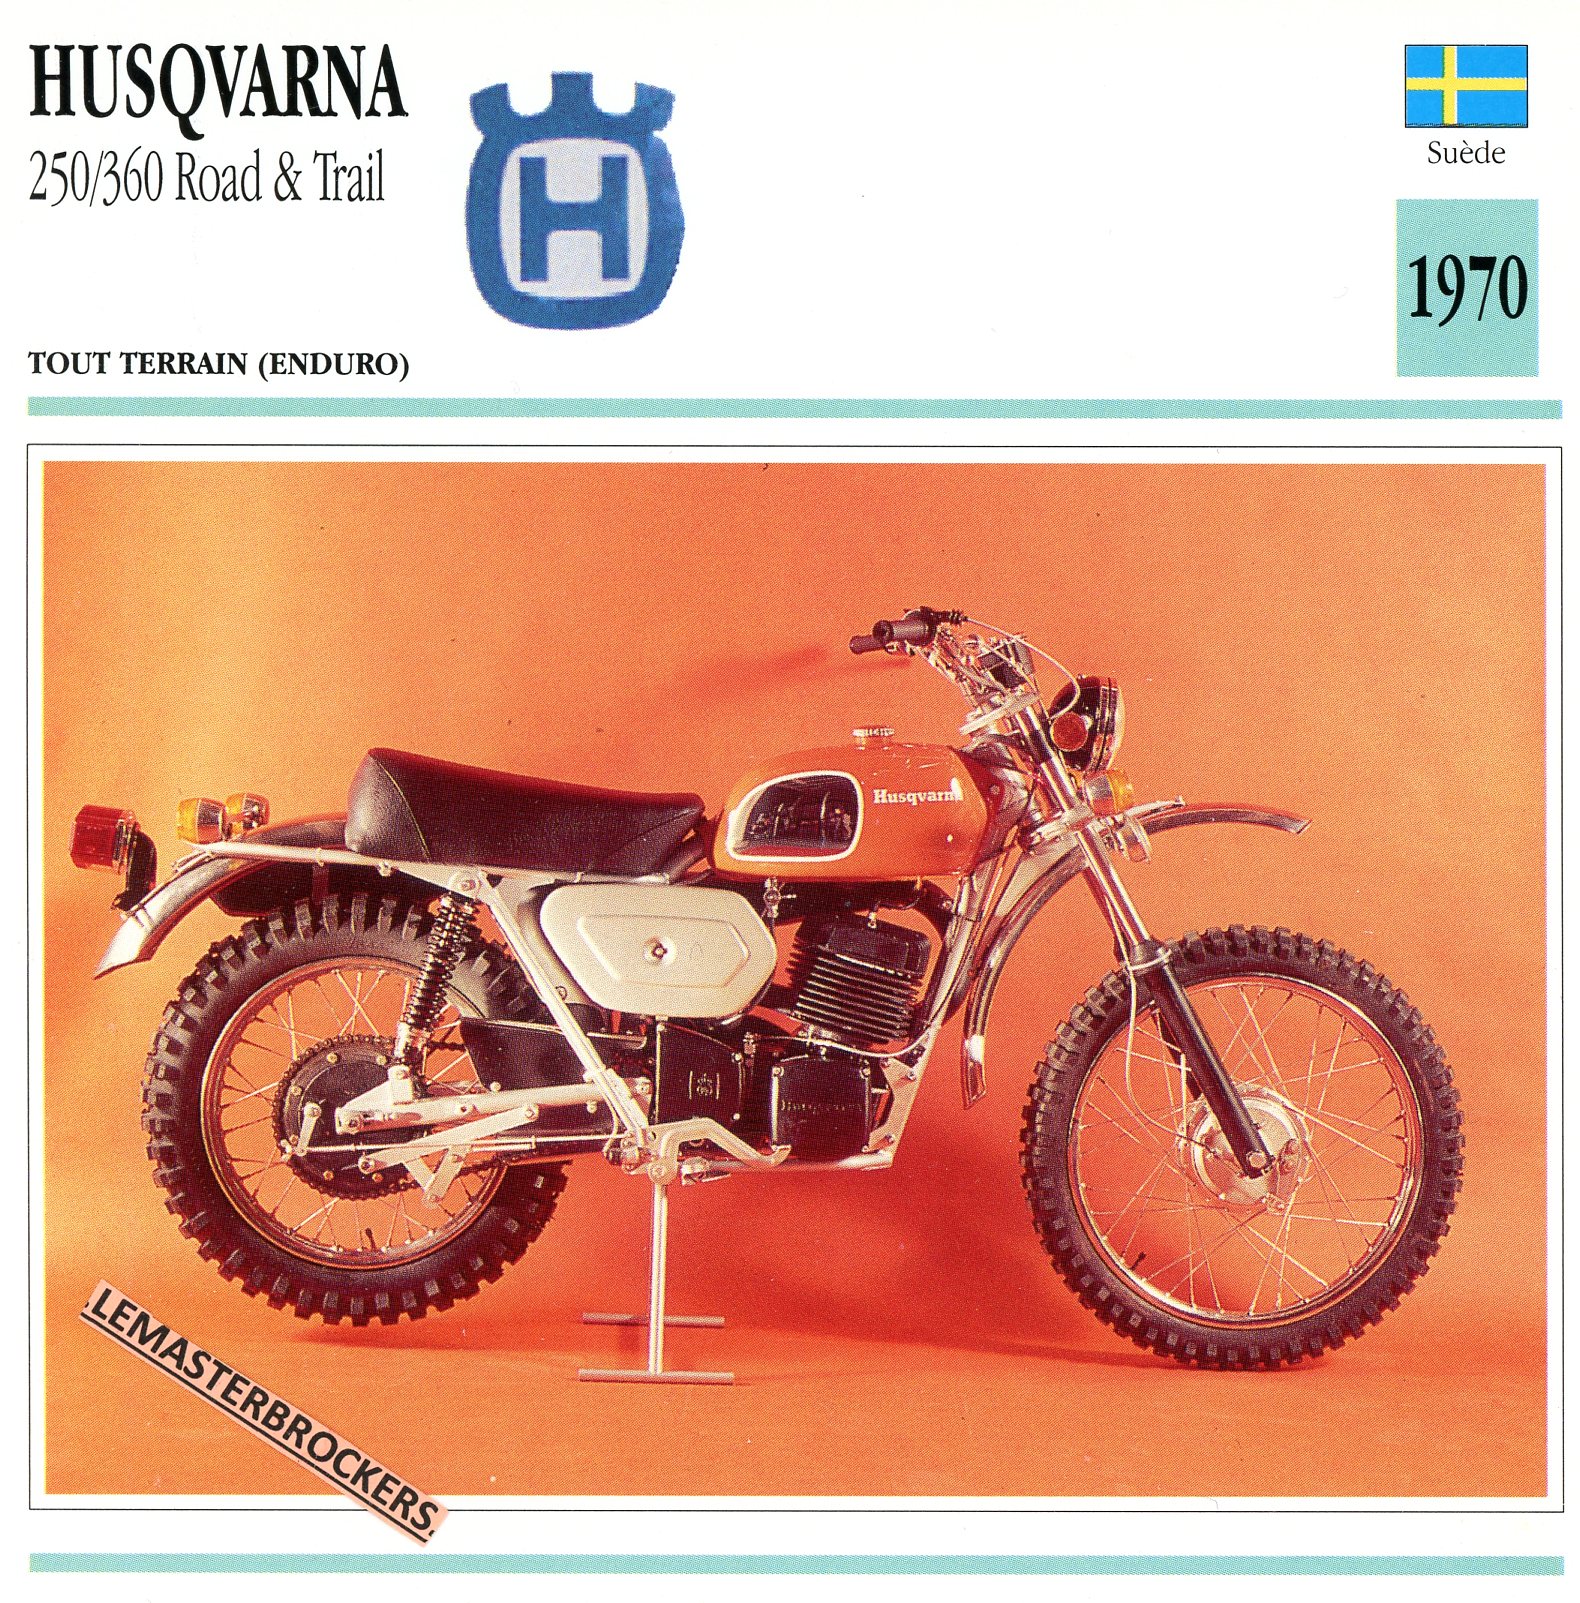 HUSQVARNA-250-360-ROAD-TRAIL-1970-FICHE-MOTO-LEMASTERBROCKERS